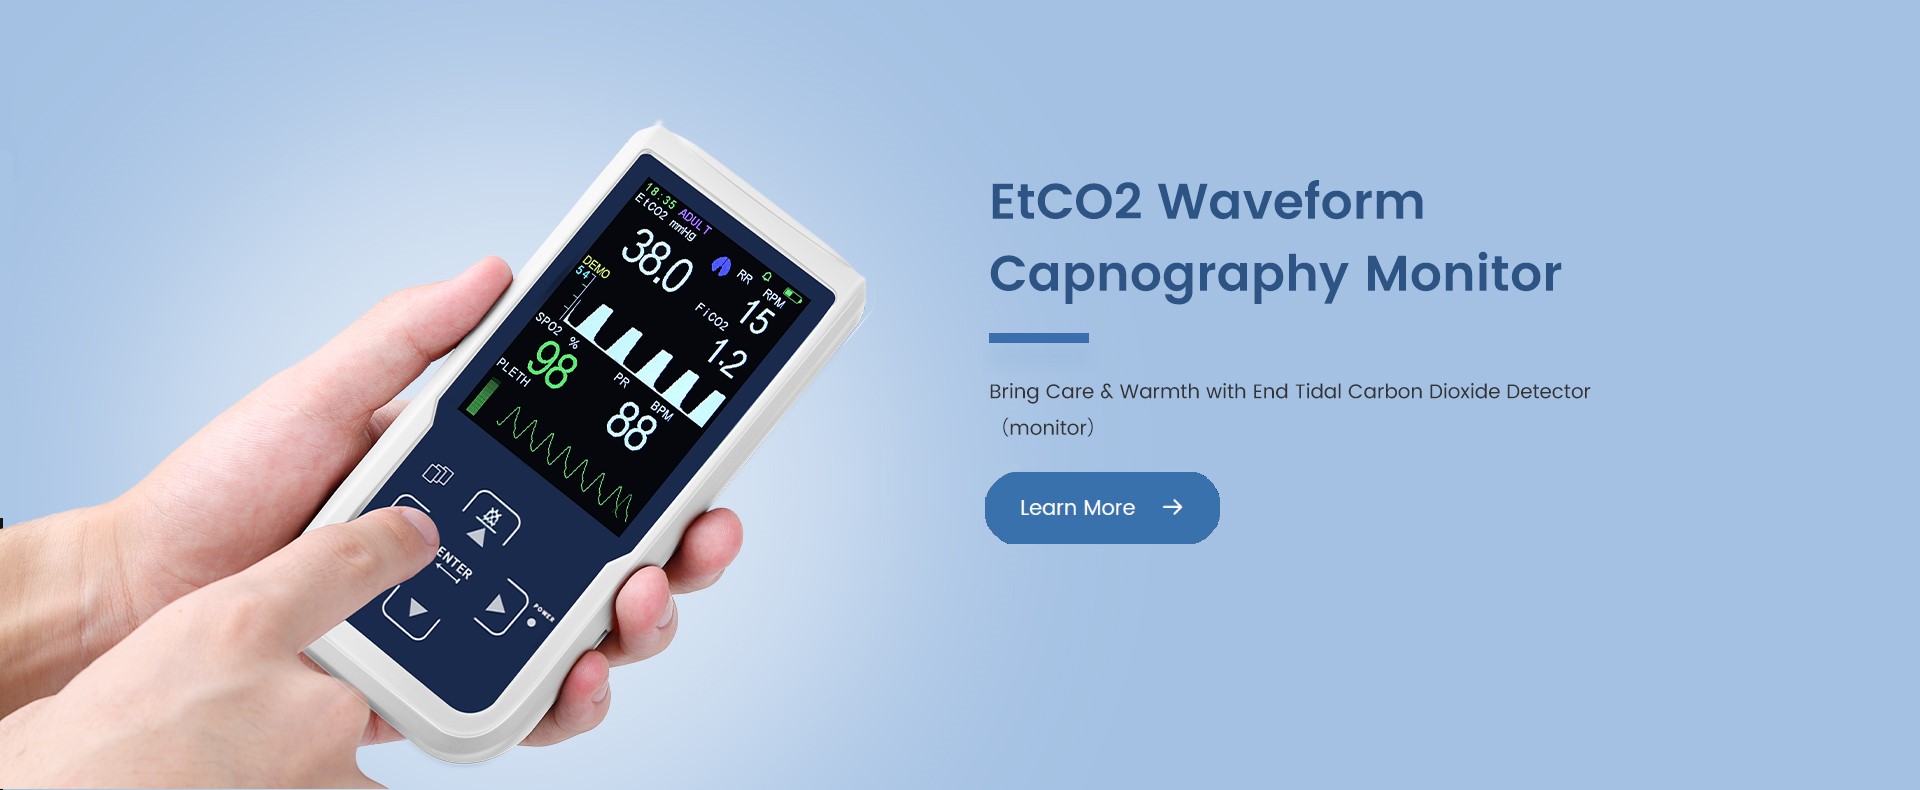 EtCO2 Waveform Capnography Monitor